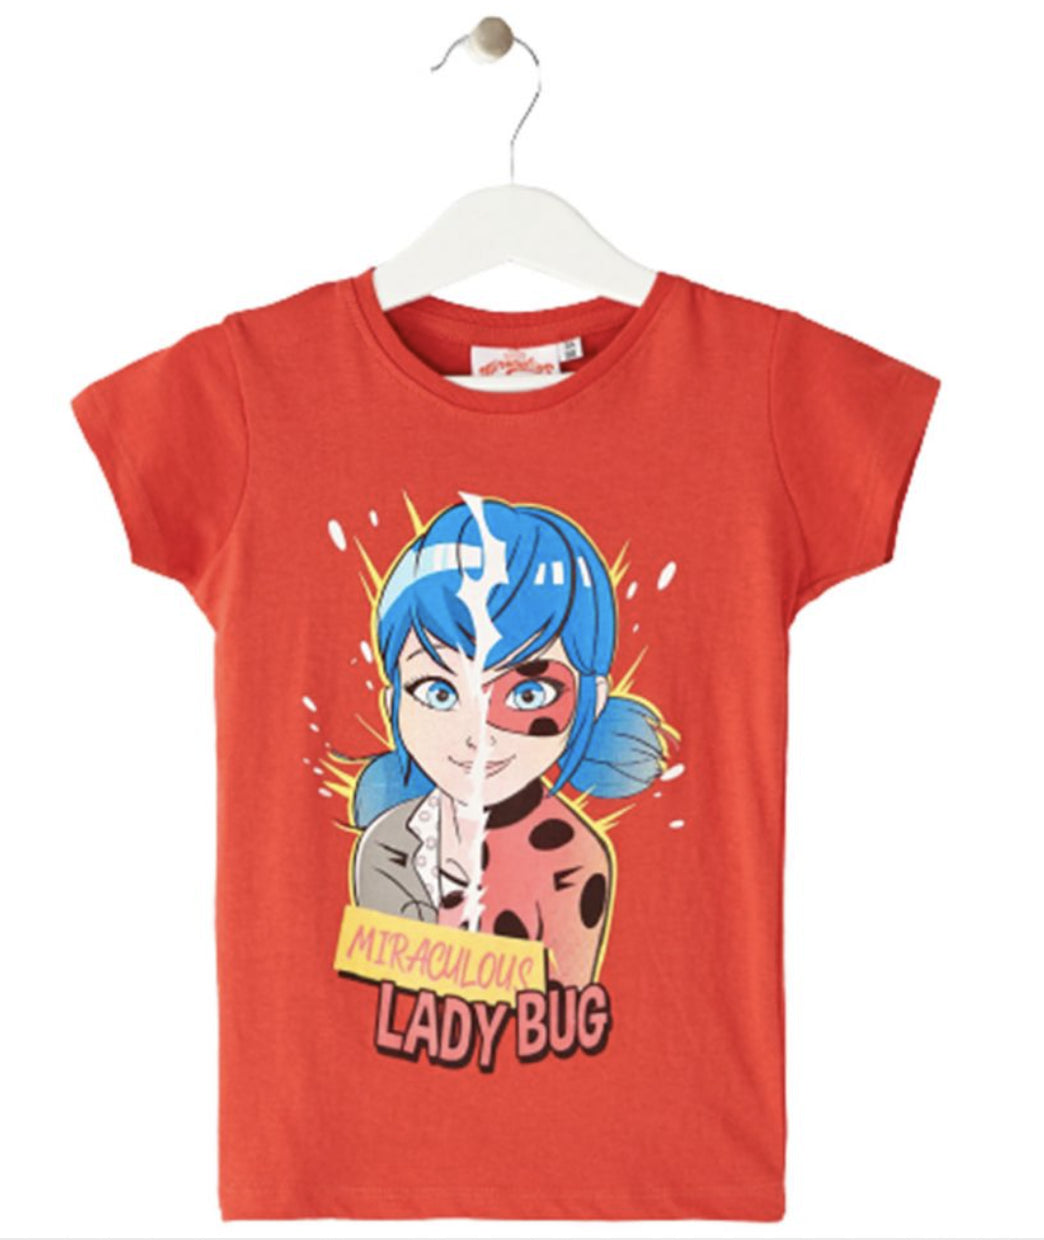 T shirt Ladybug